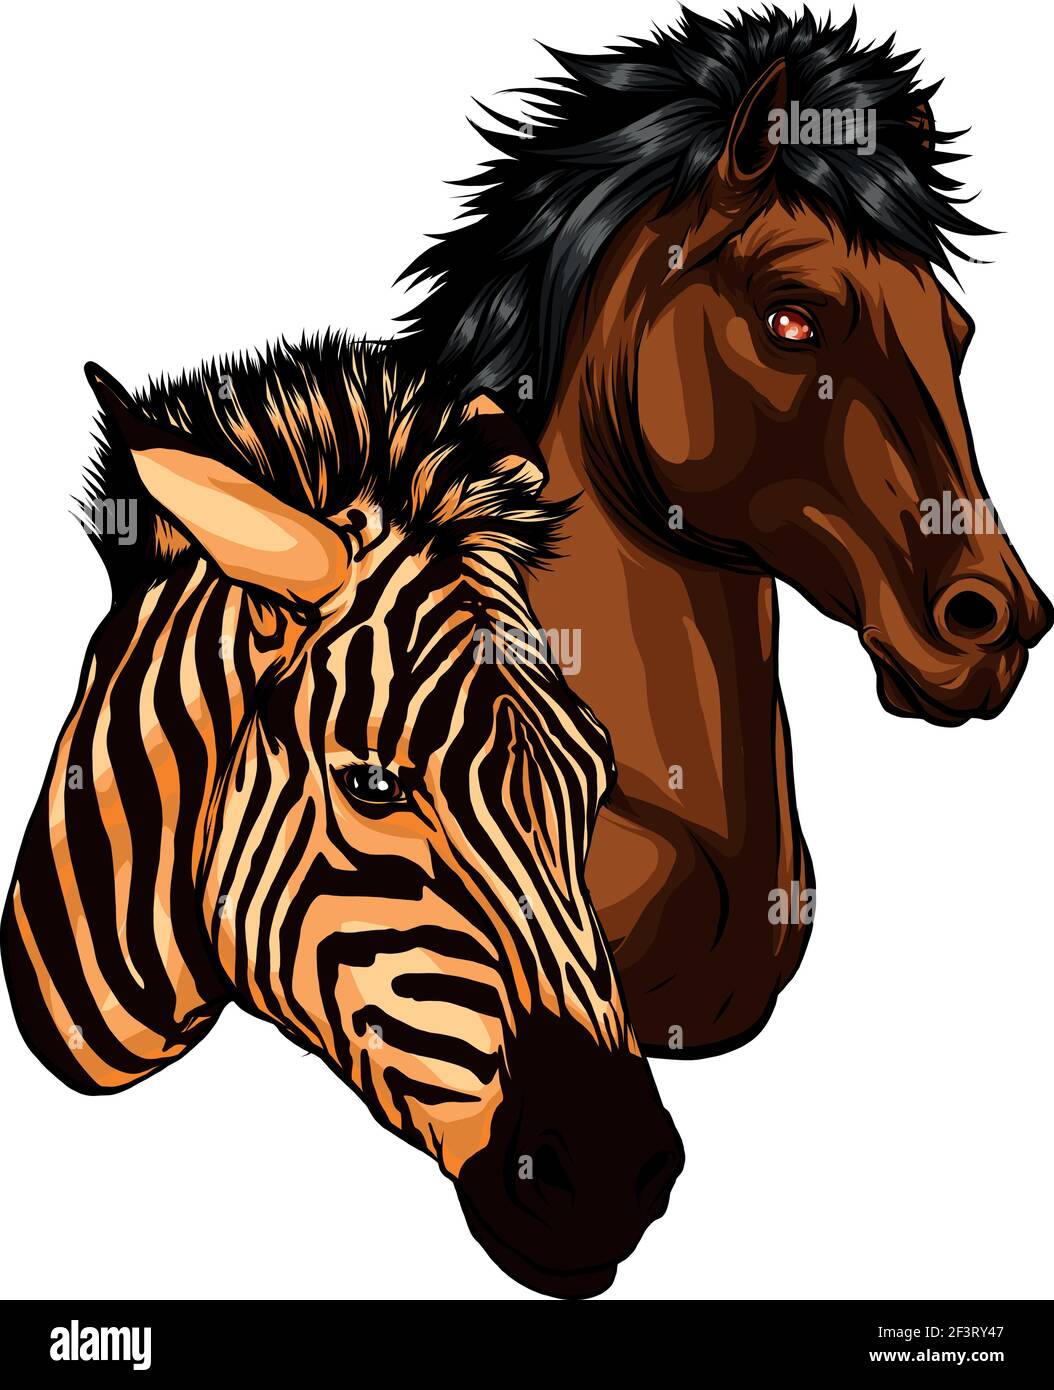 vektor-Illustration der Köpfe Zebra und Pferd Stock Vektor